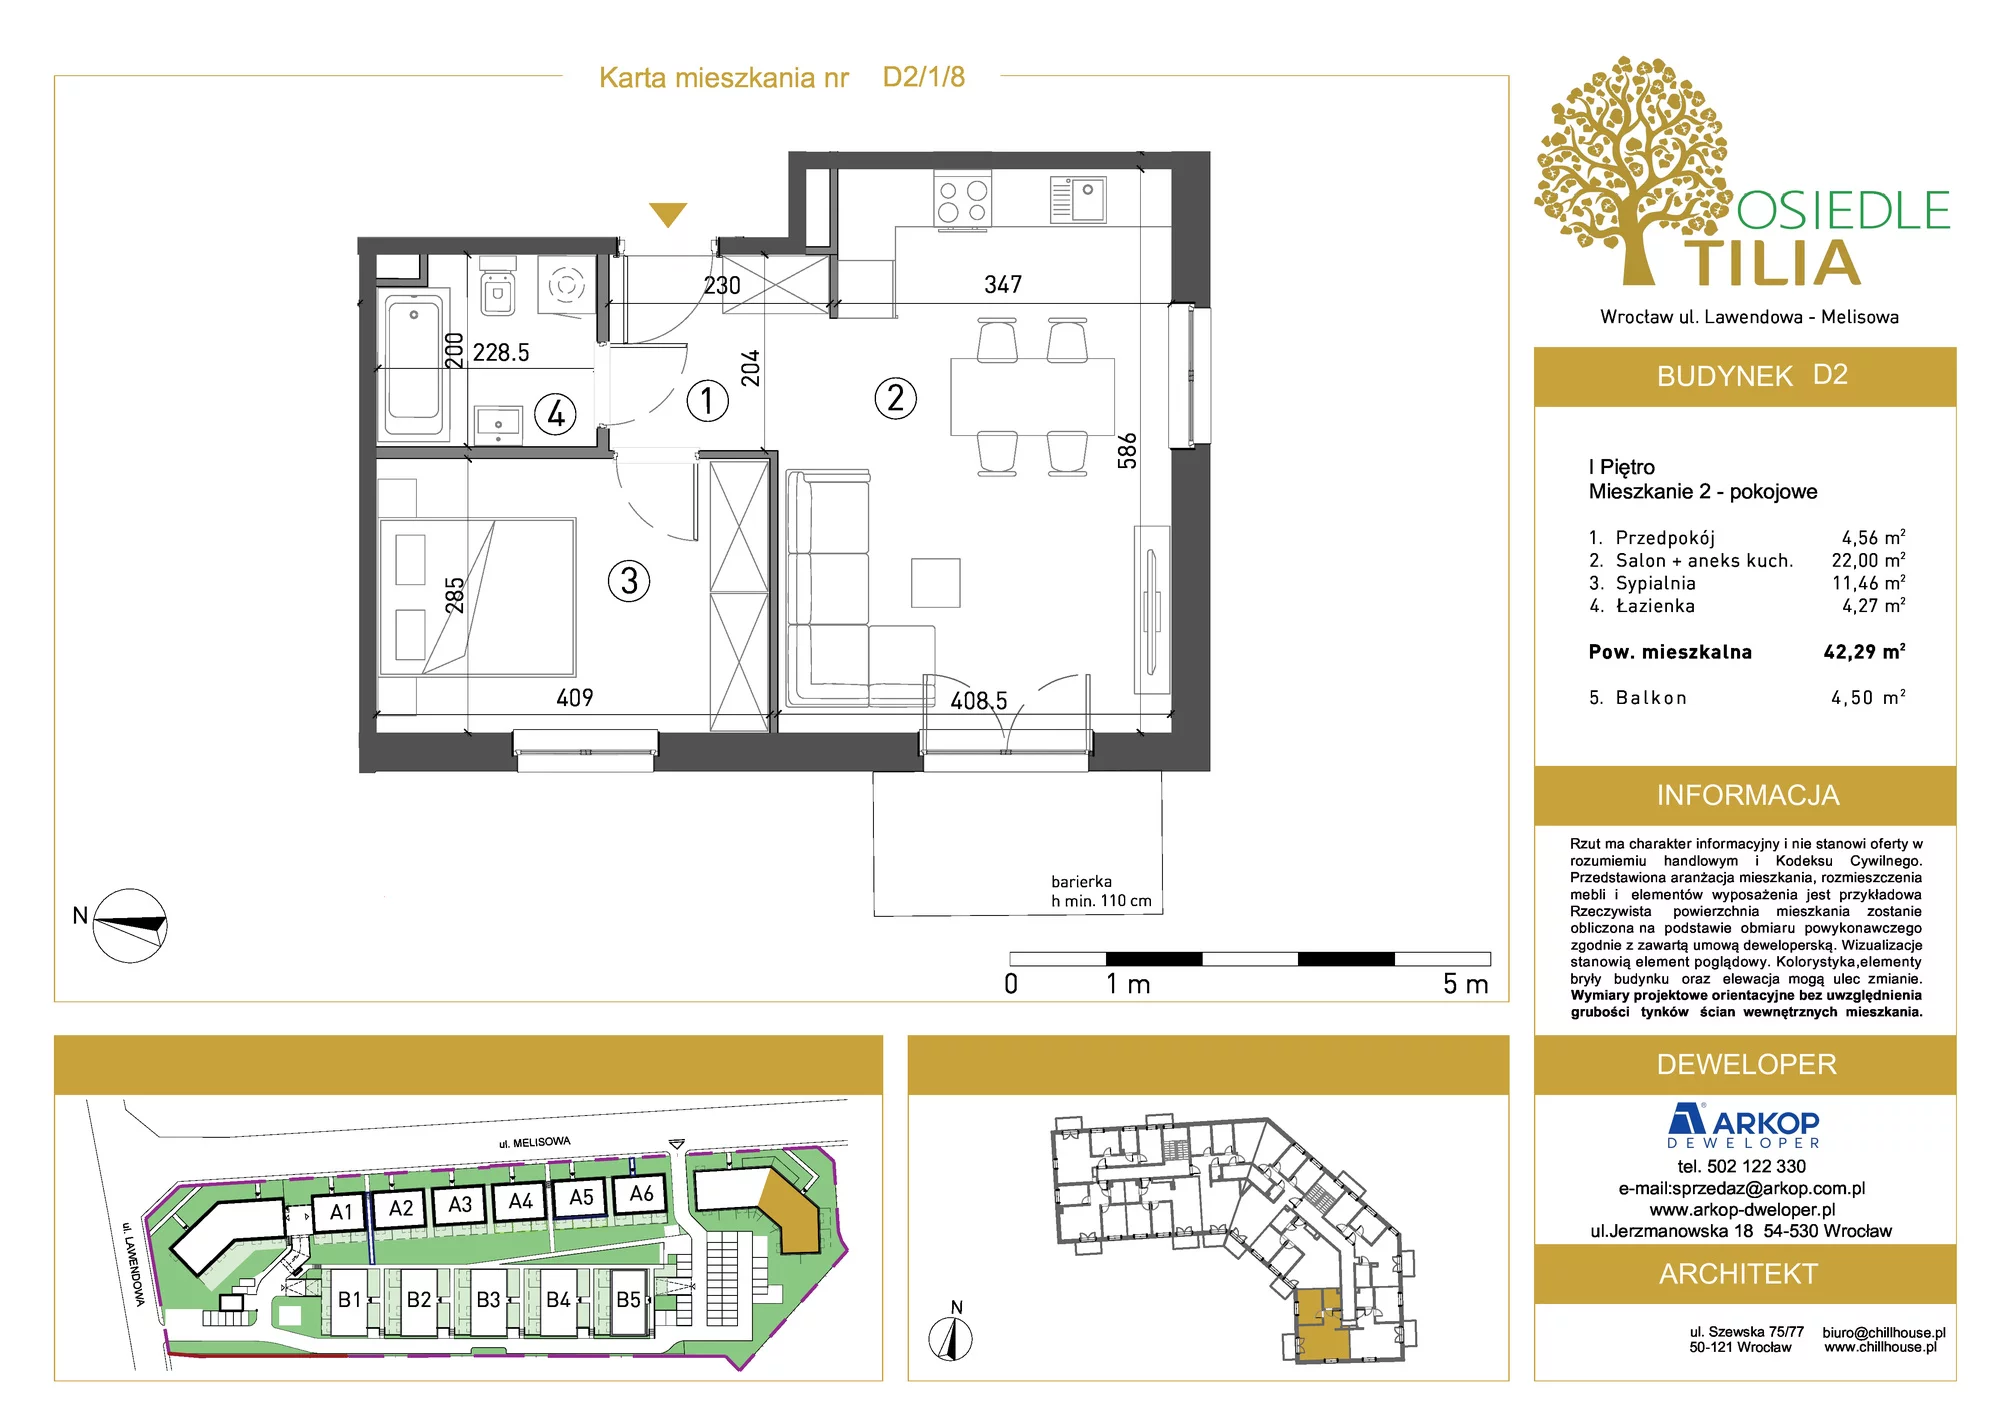 Mieszkanie 42,29 m², piętro 1, oferta nr D2/1/8, Osiedle Tilia, Wrocław, Lipa Piotrowska, Psie Pole, ul. Lawendowa/Melisowa